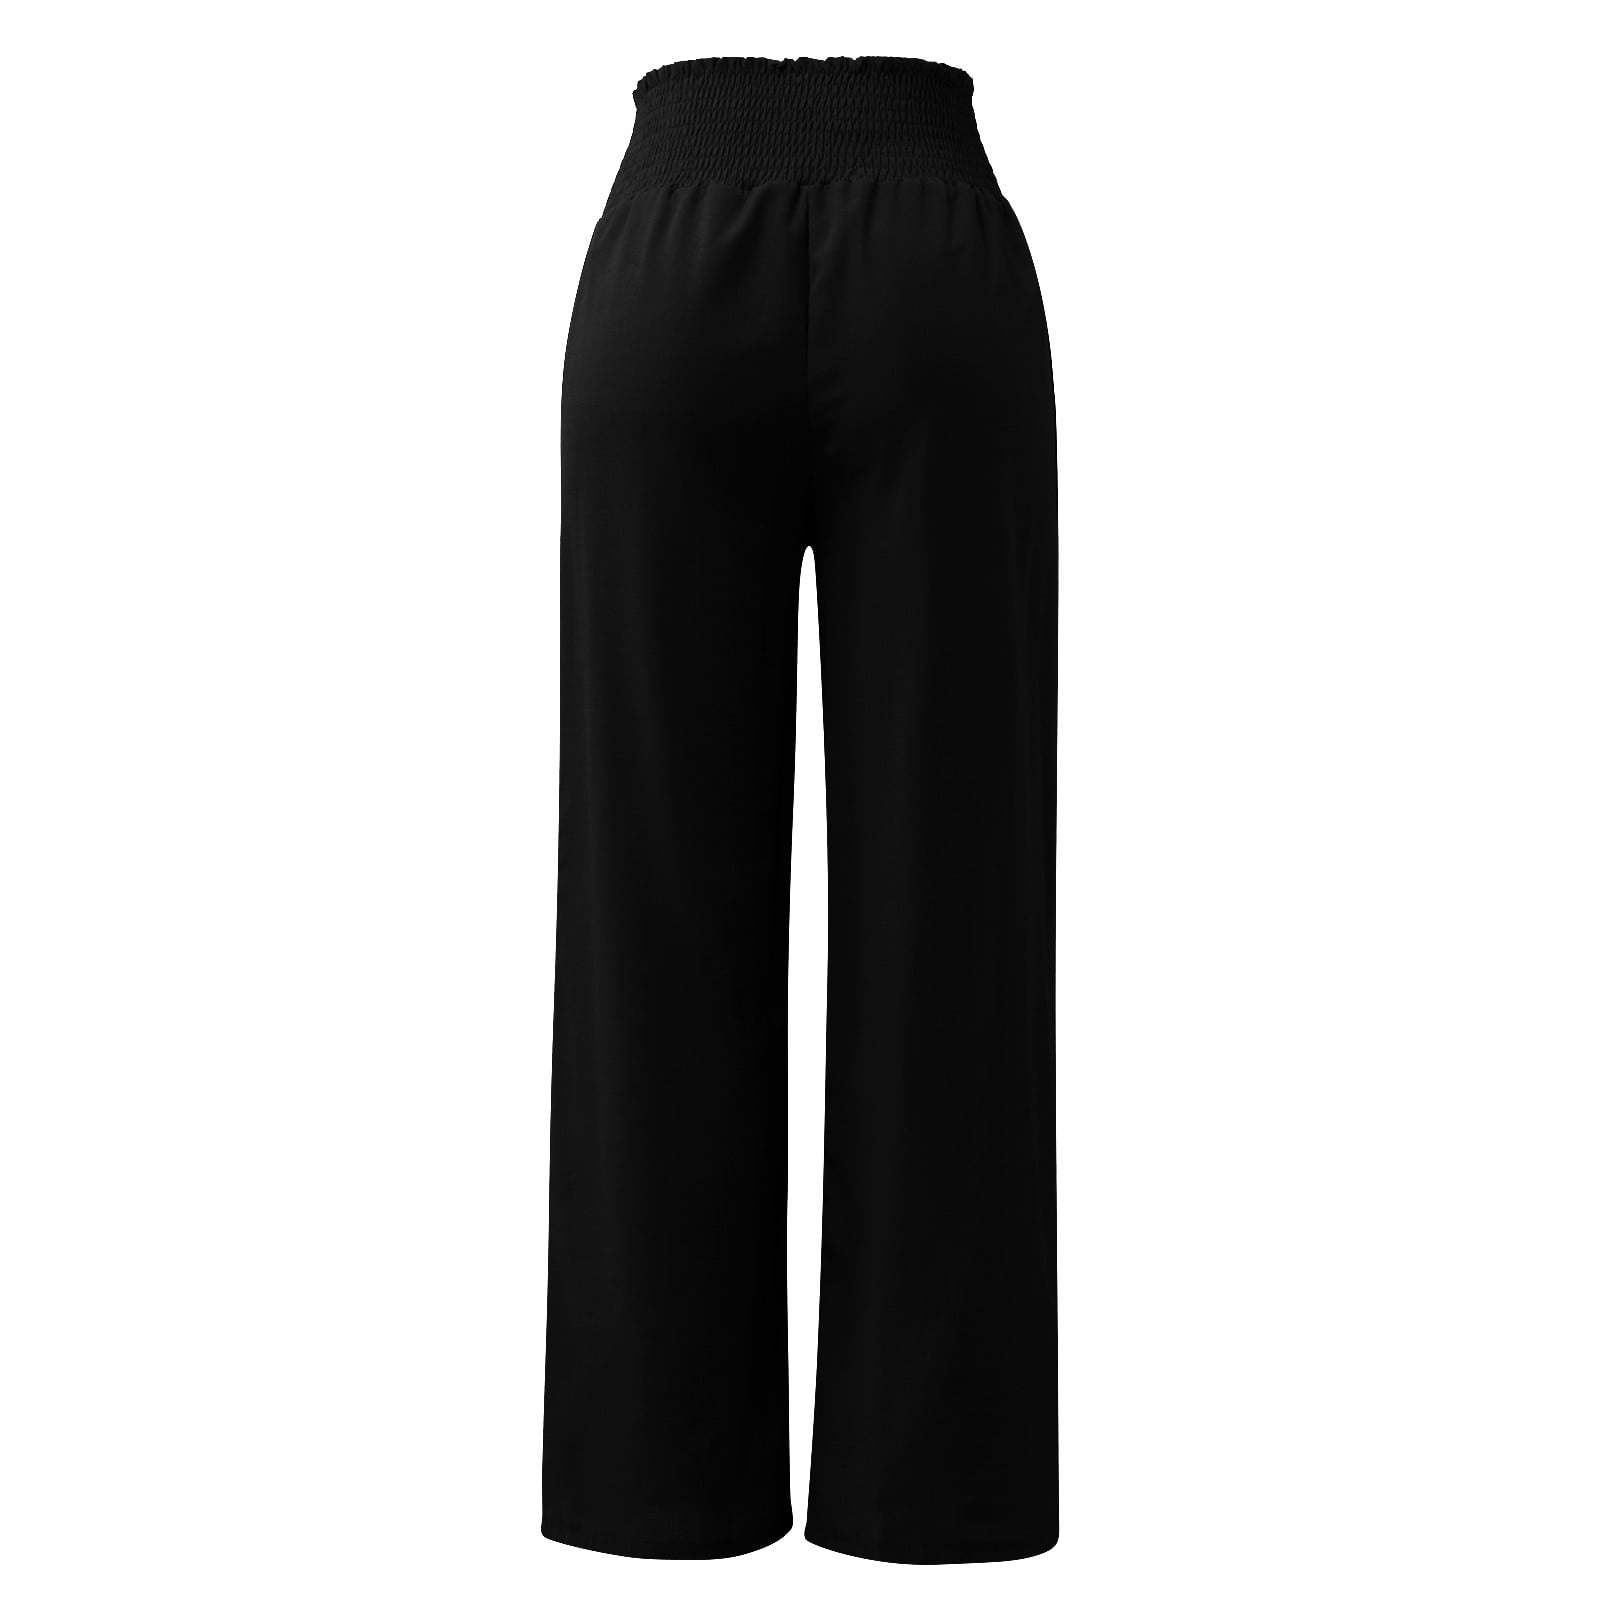 Discover 135+ black uniform pants plus size super hot